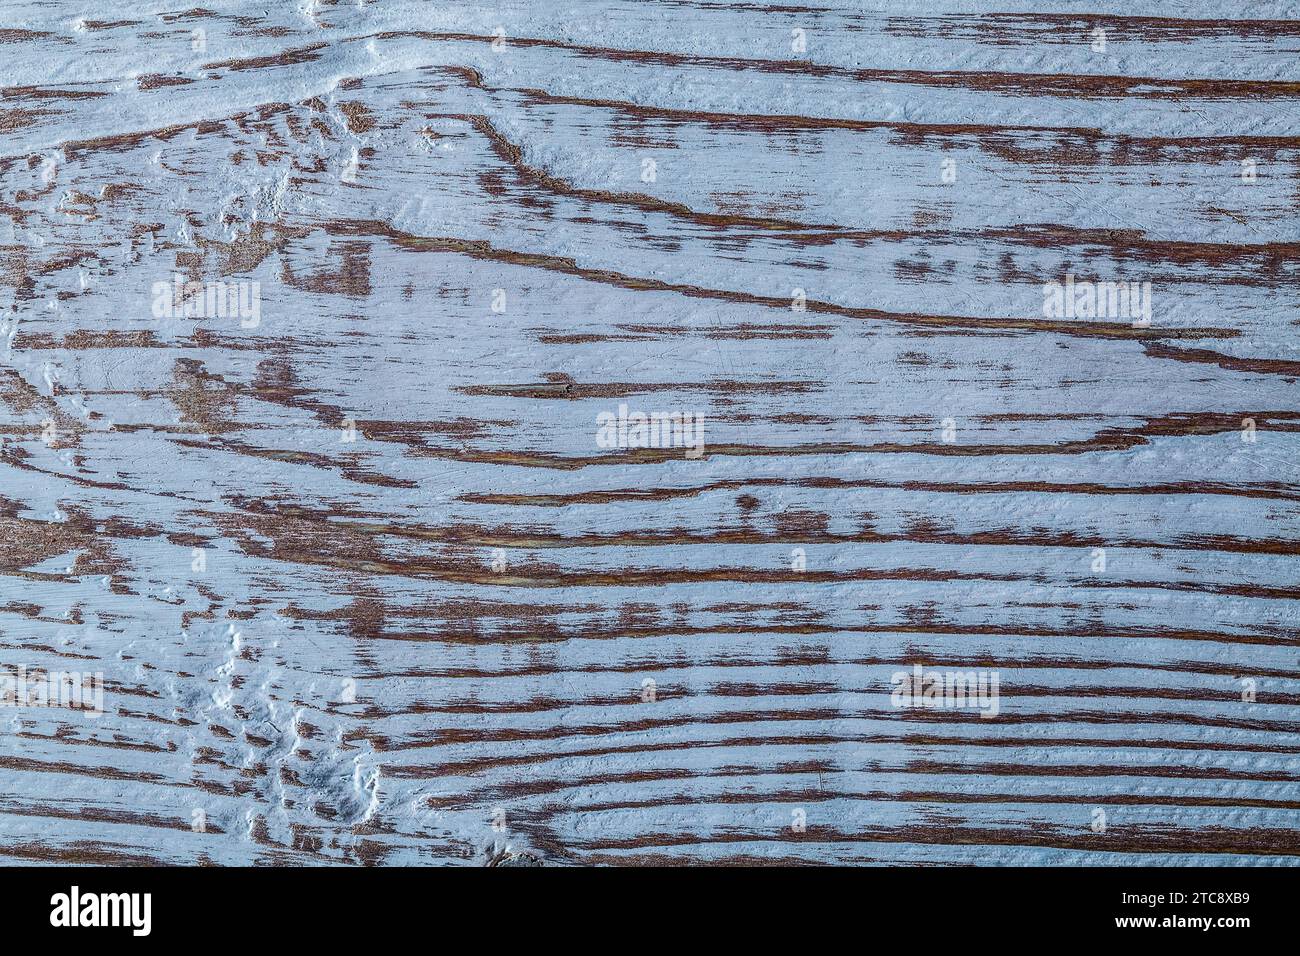 Long-lasting natural wood backcloth Horizontal view Stock Photo